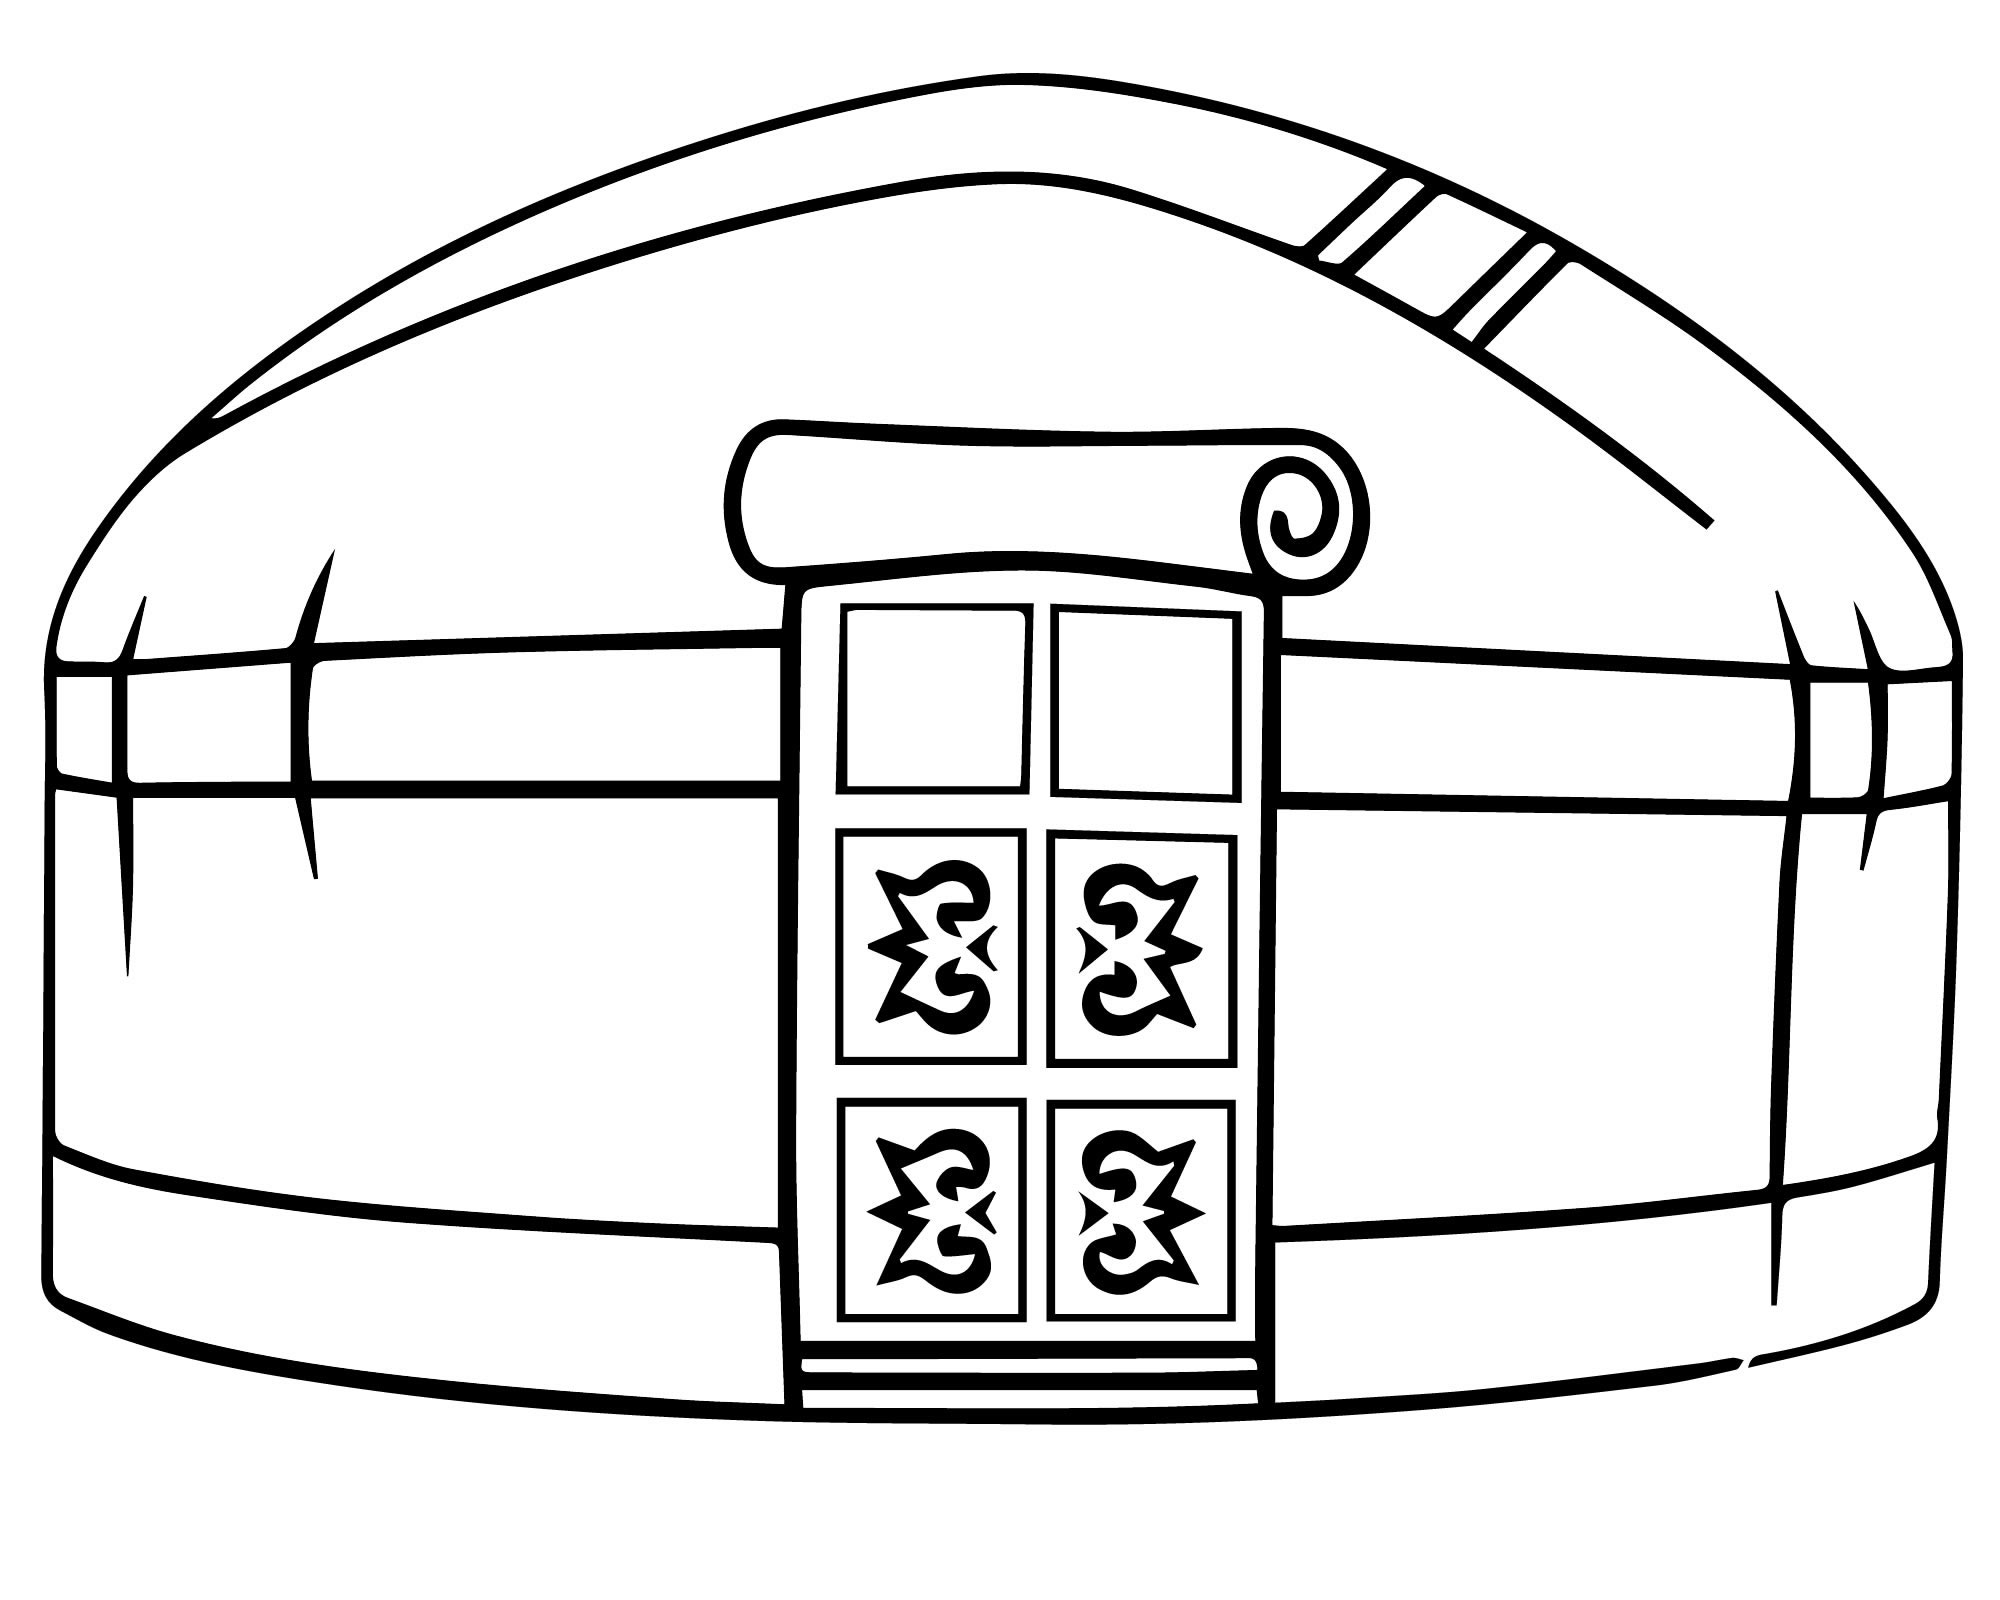 Bashkir Yurt #4